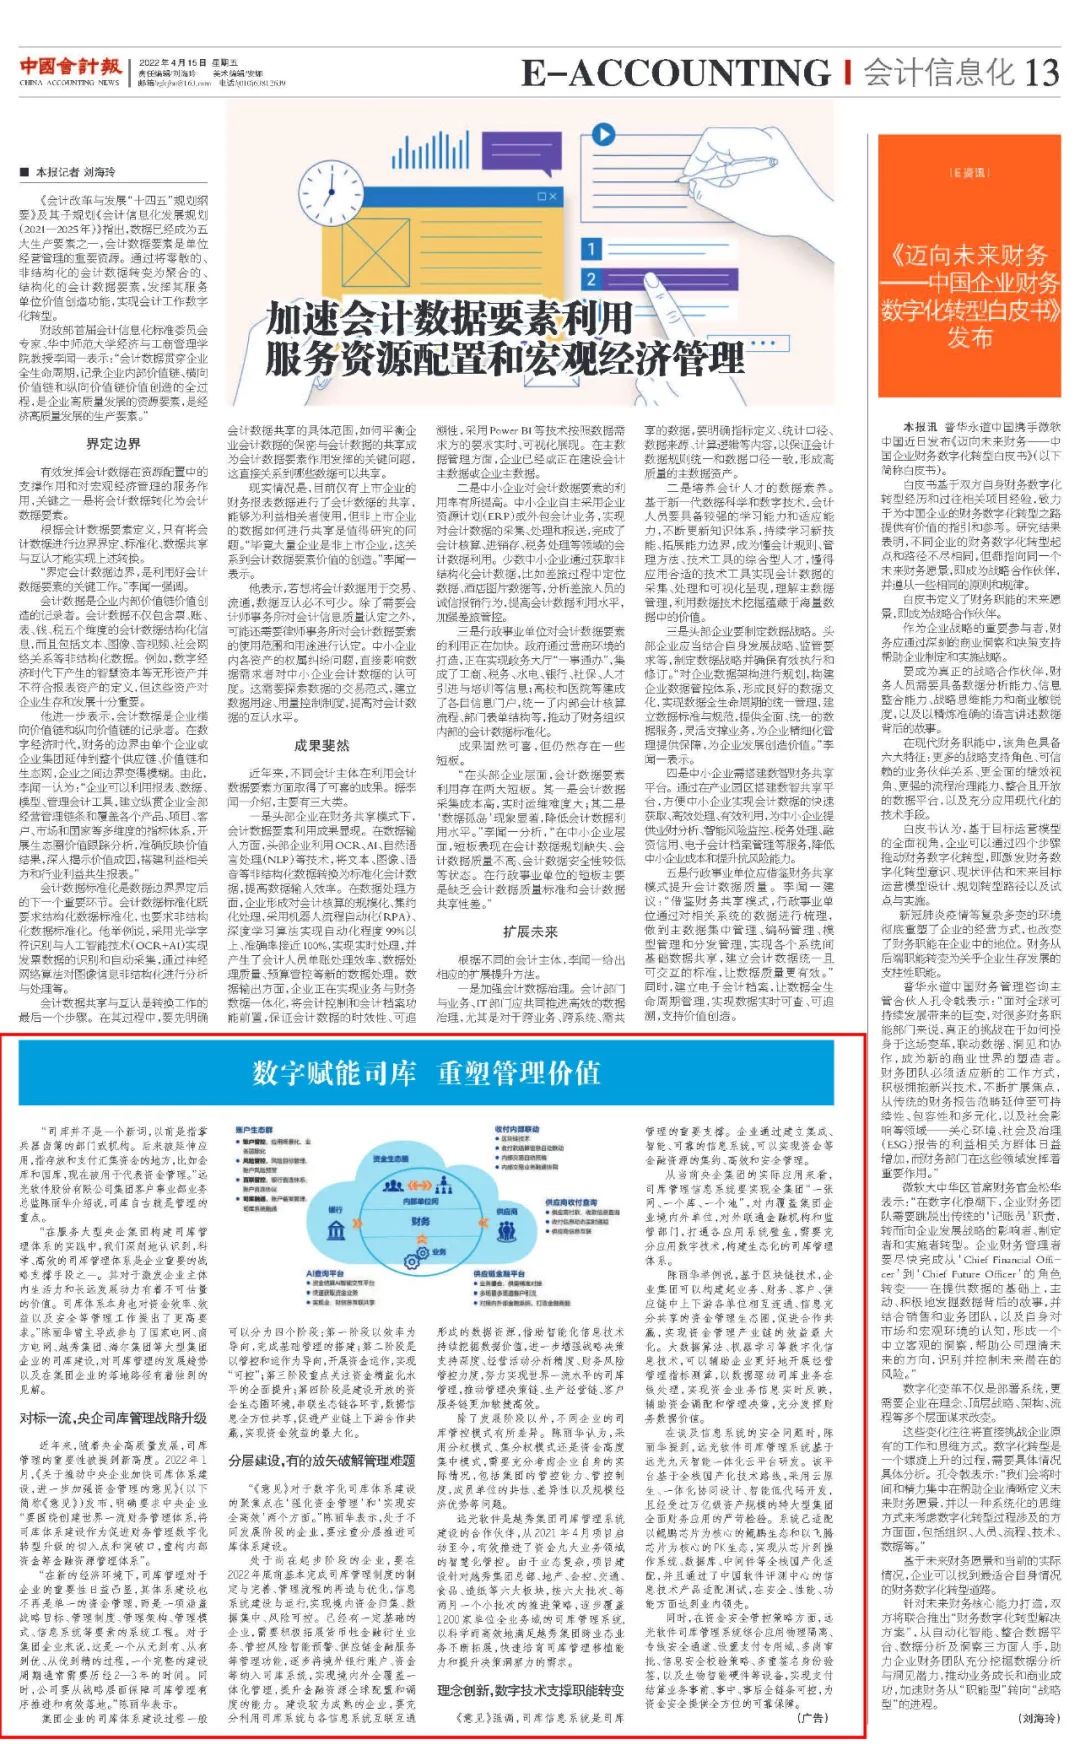 《中国会计报》数字赋能司库 重塑管理价值